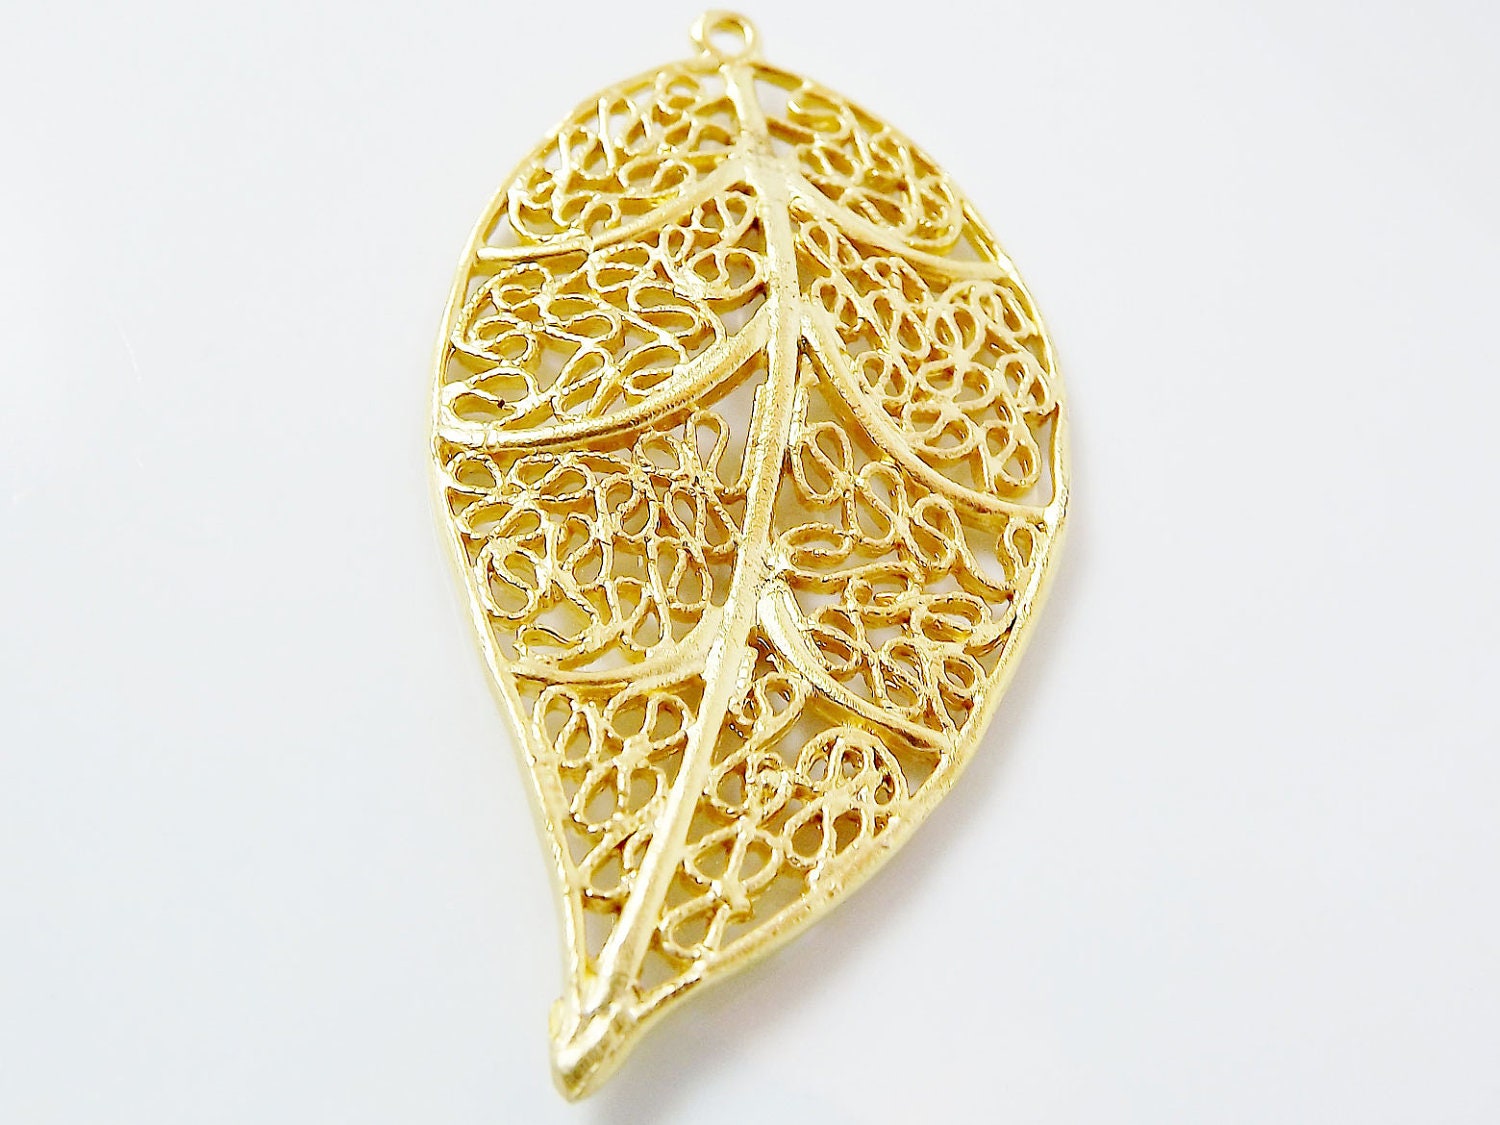 Gold Leaf Pendant, Filigree Leaf, Leaf Charm, Metal Leaf Pendant, Gold Leaves, Boho Pendant, Jewelry Supplies, 22k Matte Gold Plated 1pc